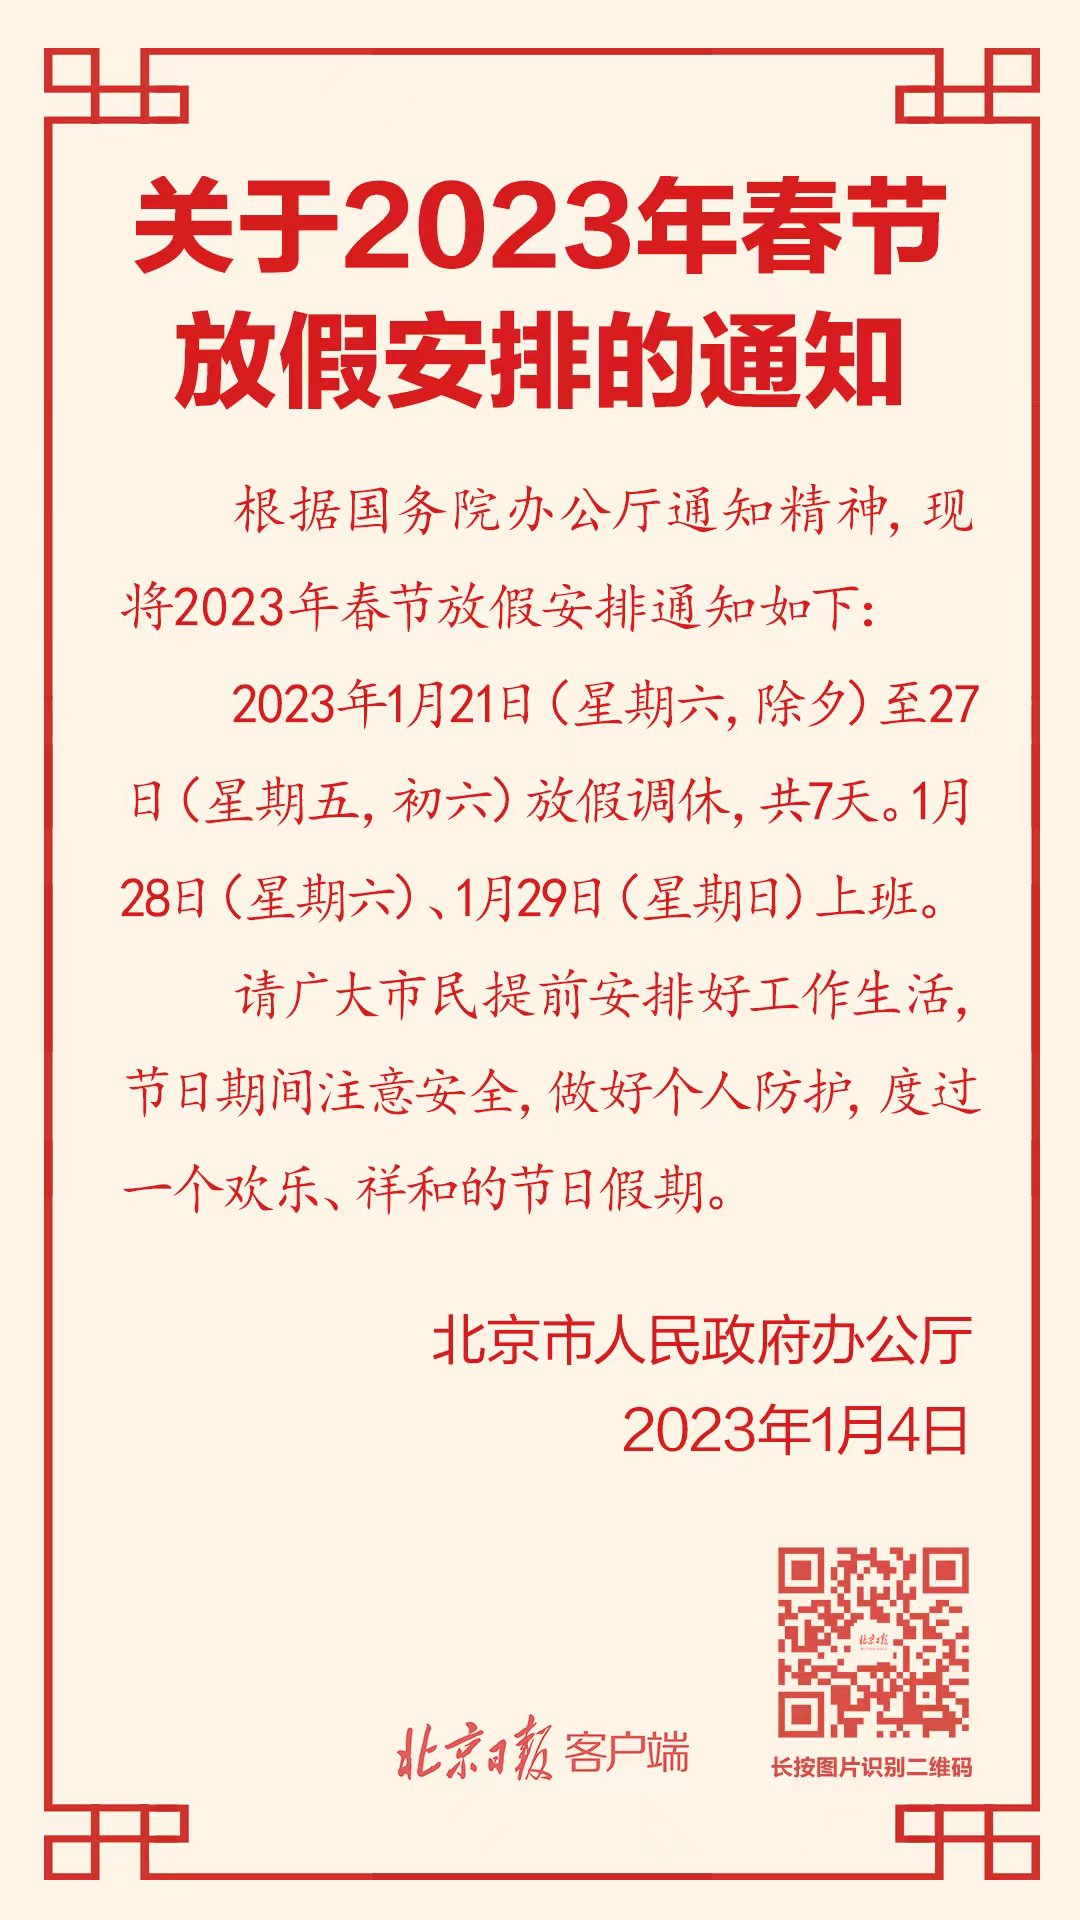 1月21日至27日放假调休！2023年春节放假安排来了